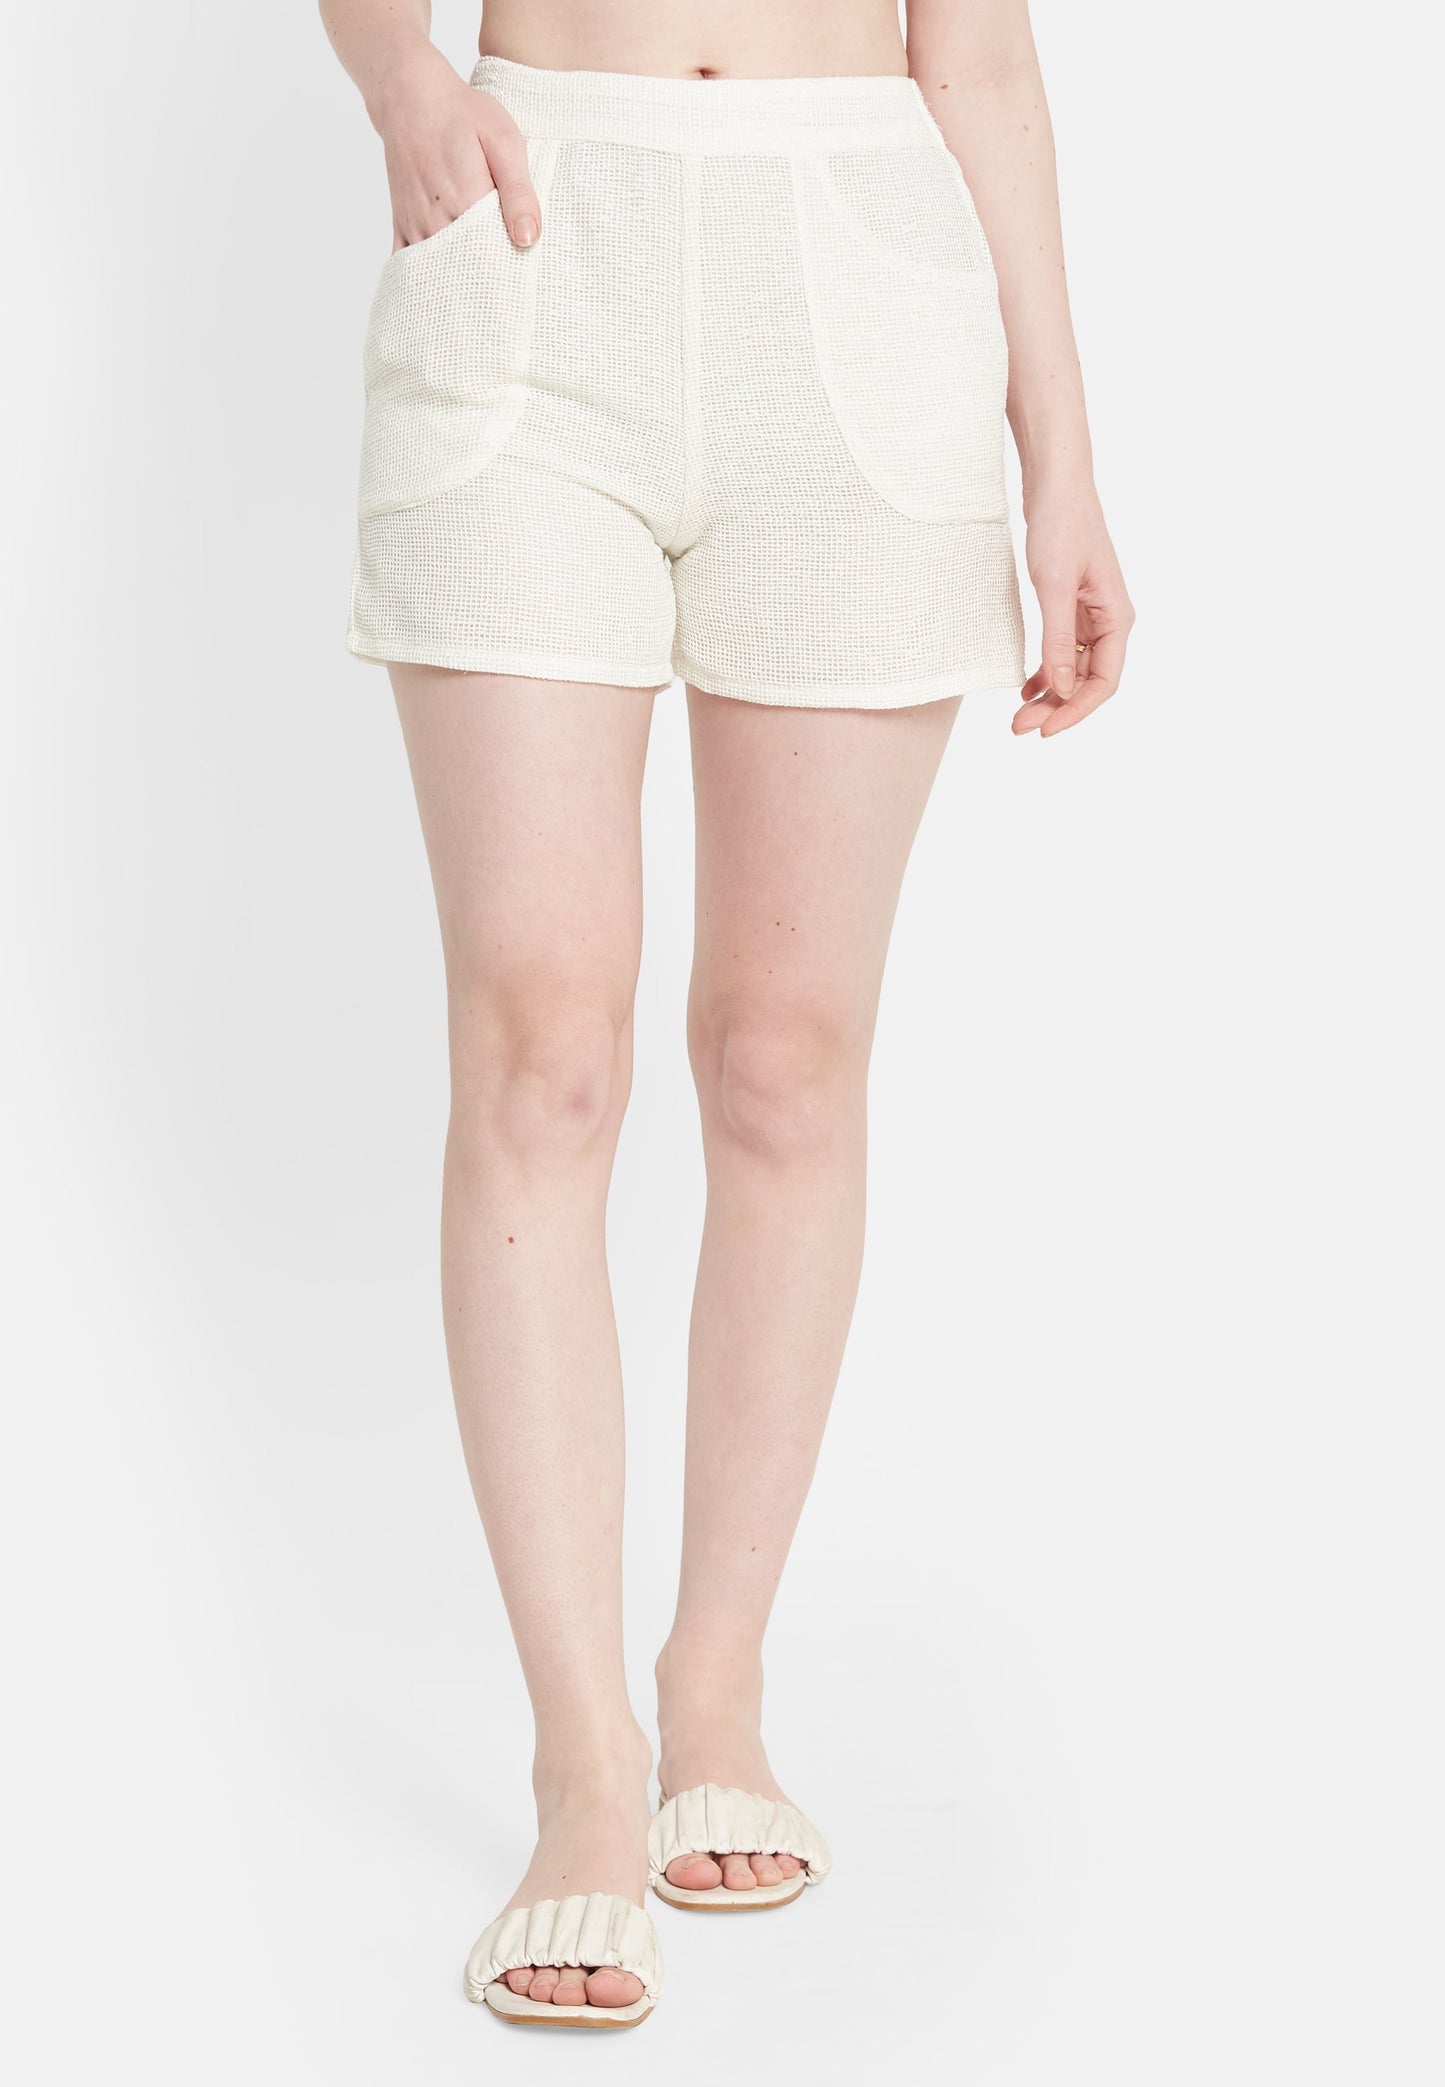 Pantalones cortos blancos bahía